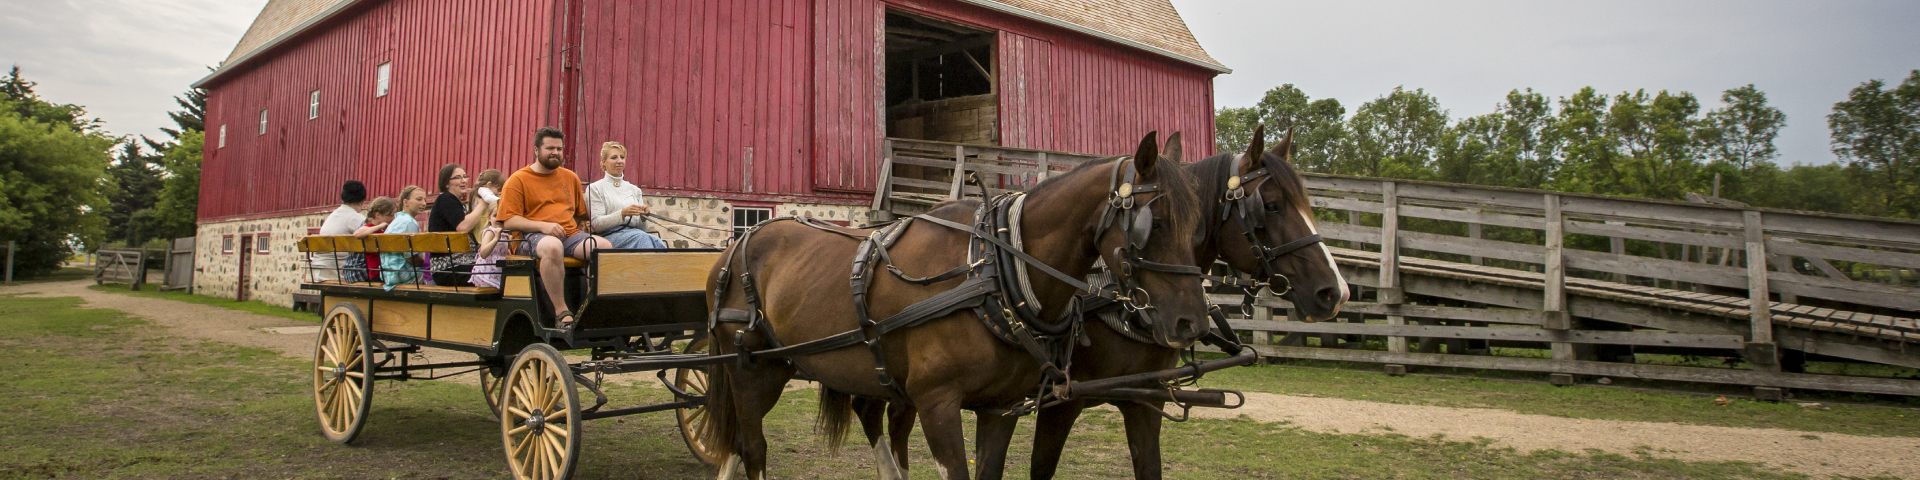 Un attelage de chevaux tire un chariot rempli de visiteurs près de la grosse grange rouge au lieu historique national du Homestead-Motherwell.